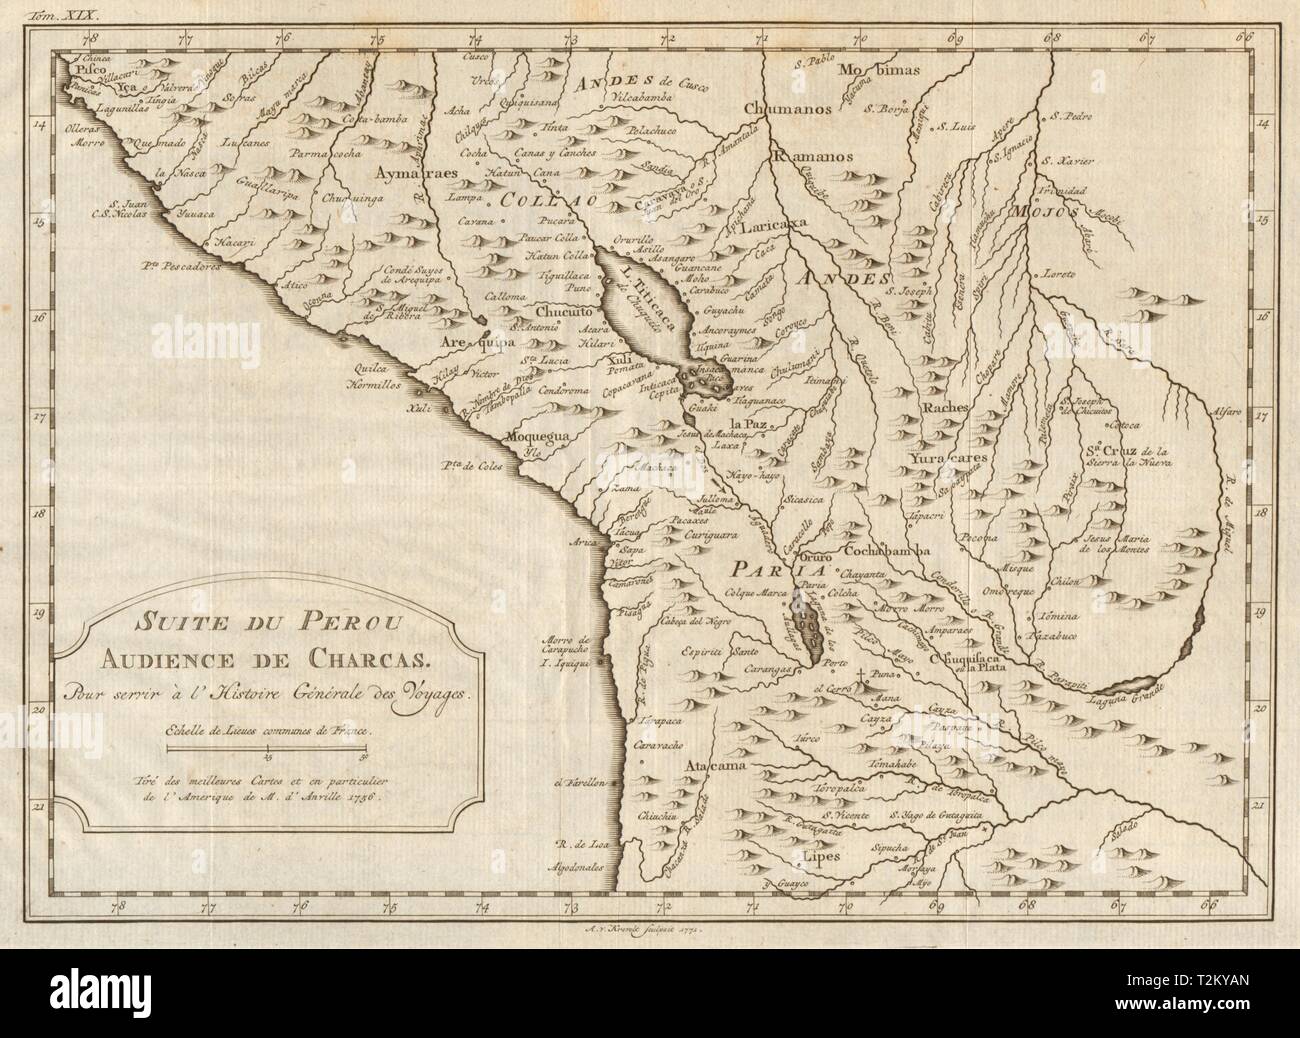 'Suite du Perou. Audience de Charcas'. Bolivia Peru.  BELLIN/SCHLEY 1772 map Stock Photo